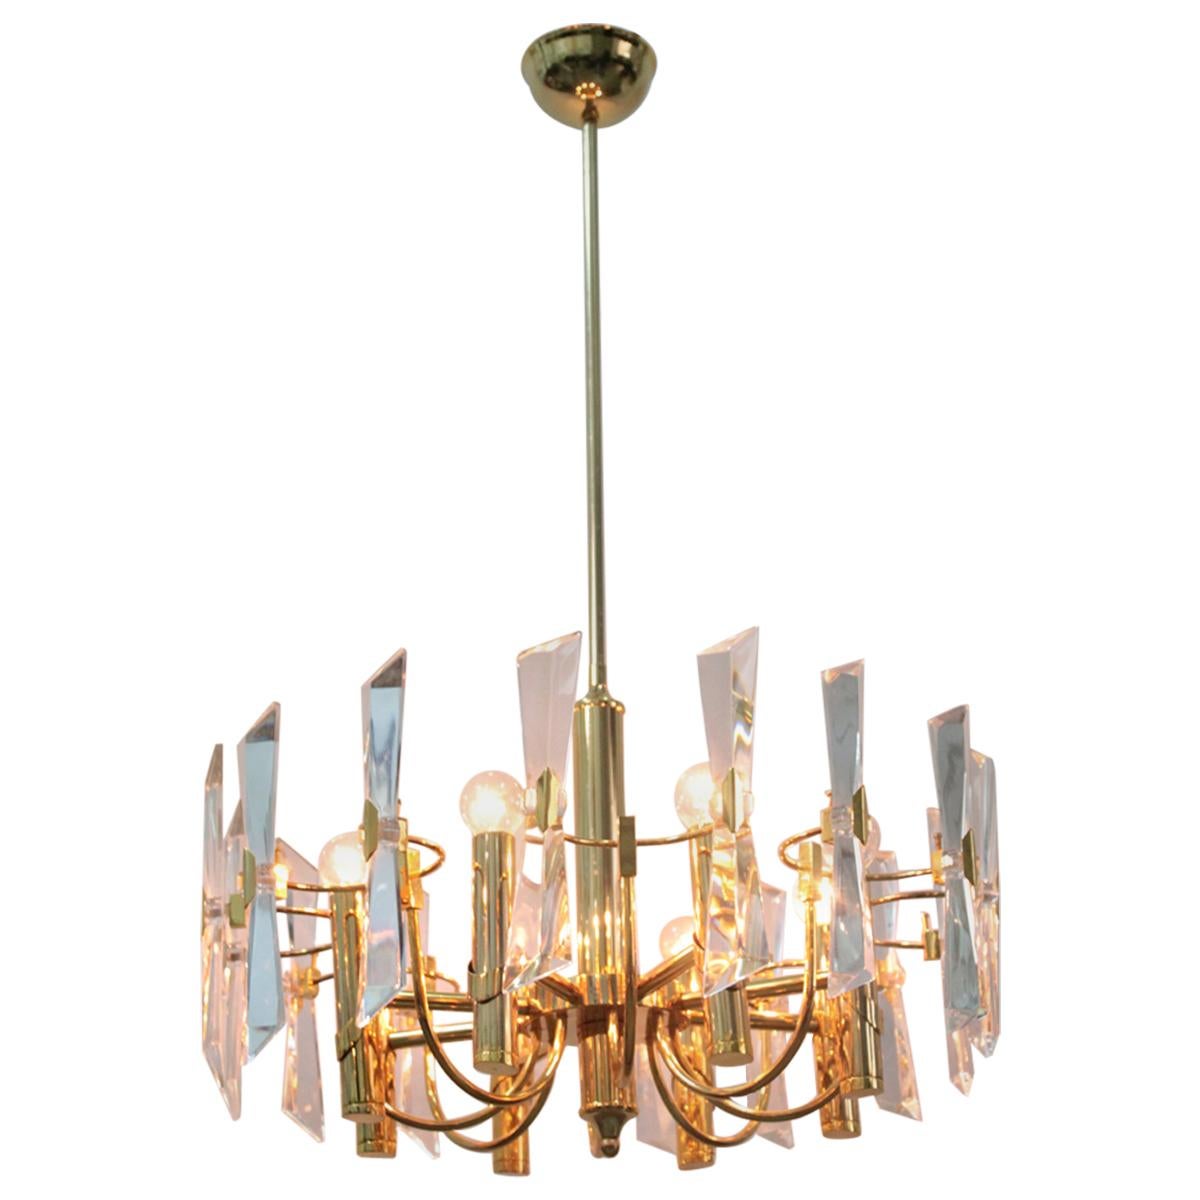 Modernist Gold Ceiling Lamp Sciolari 1970s Stilkronen Art Glass For Sale